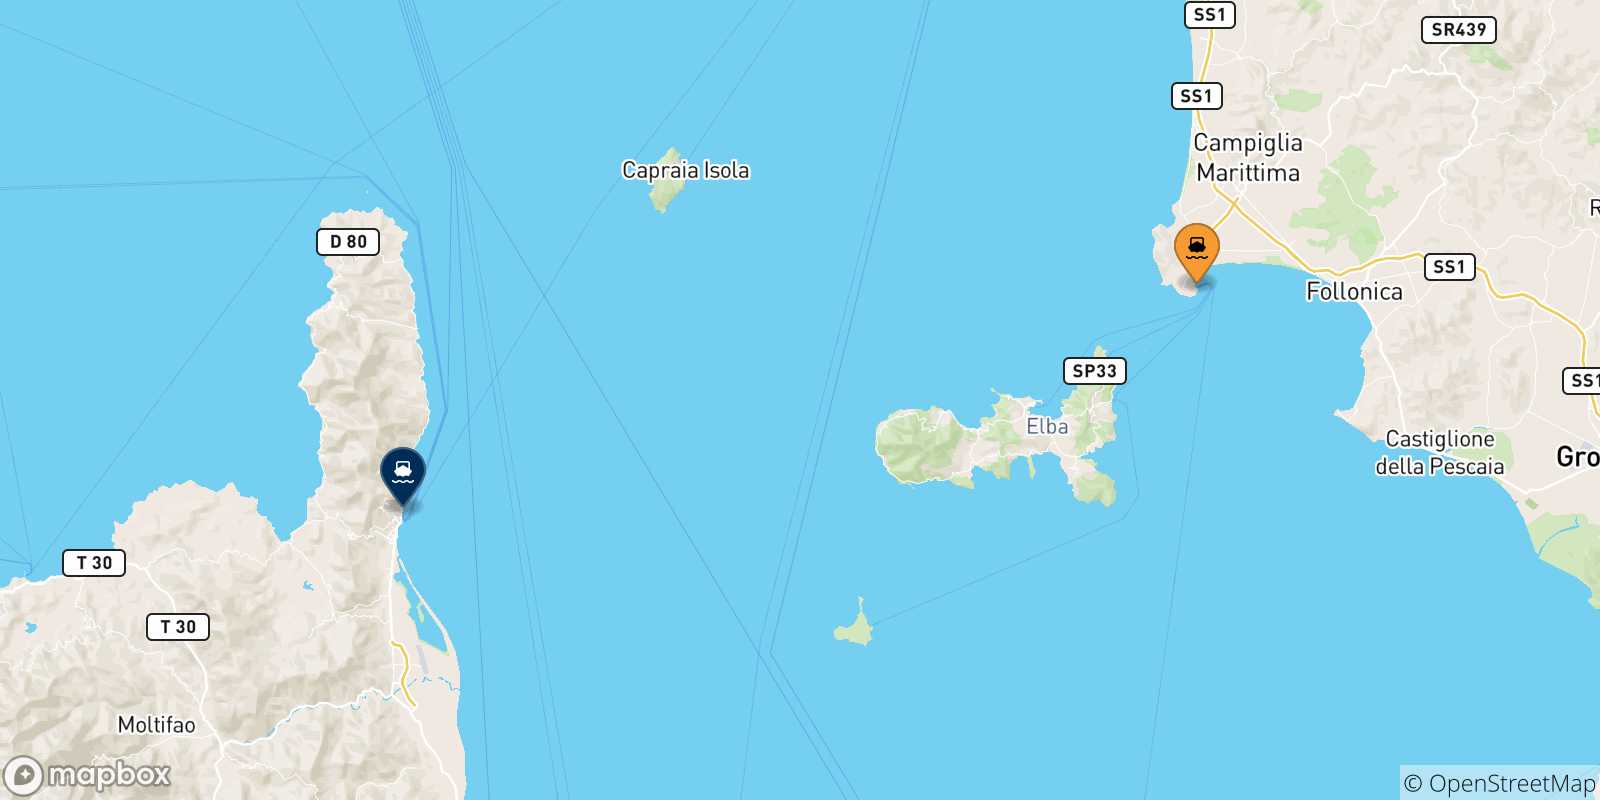 Mappa delle possibili rotte tra Piombino e la Corsica